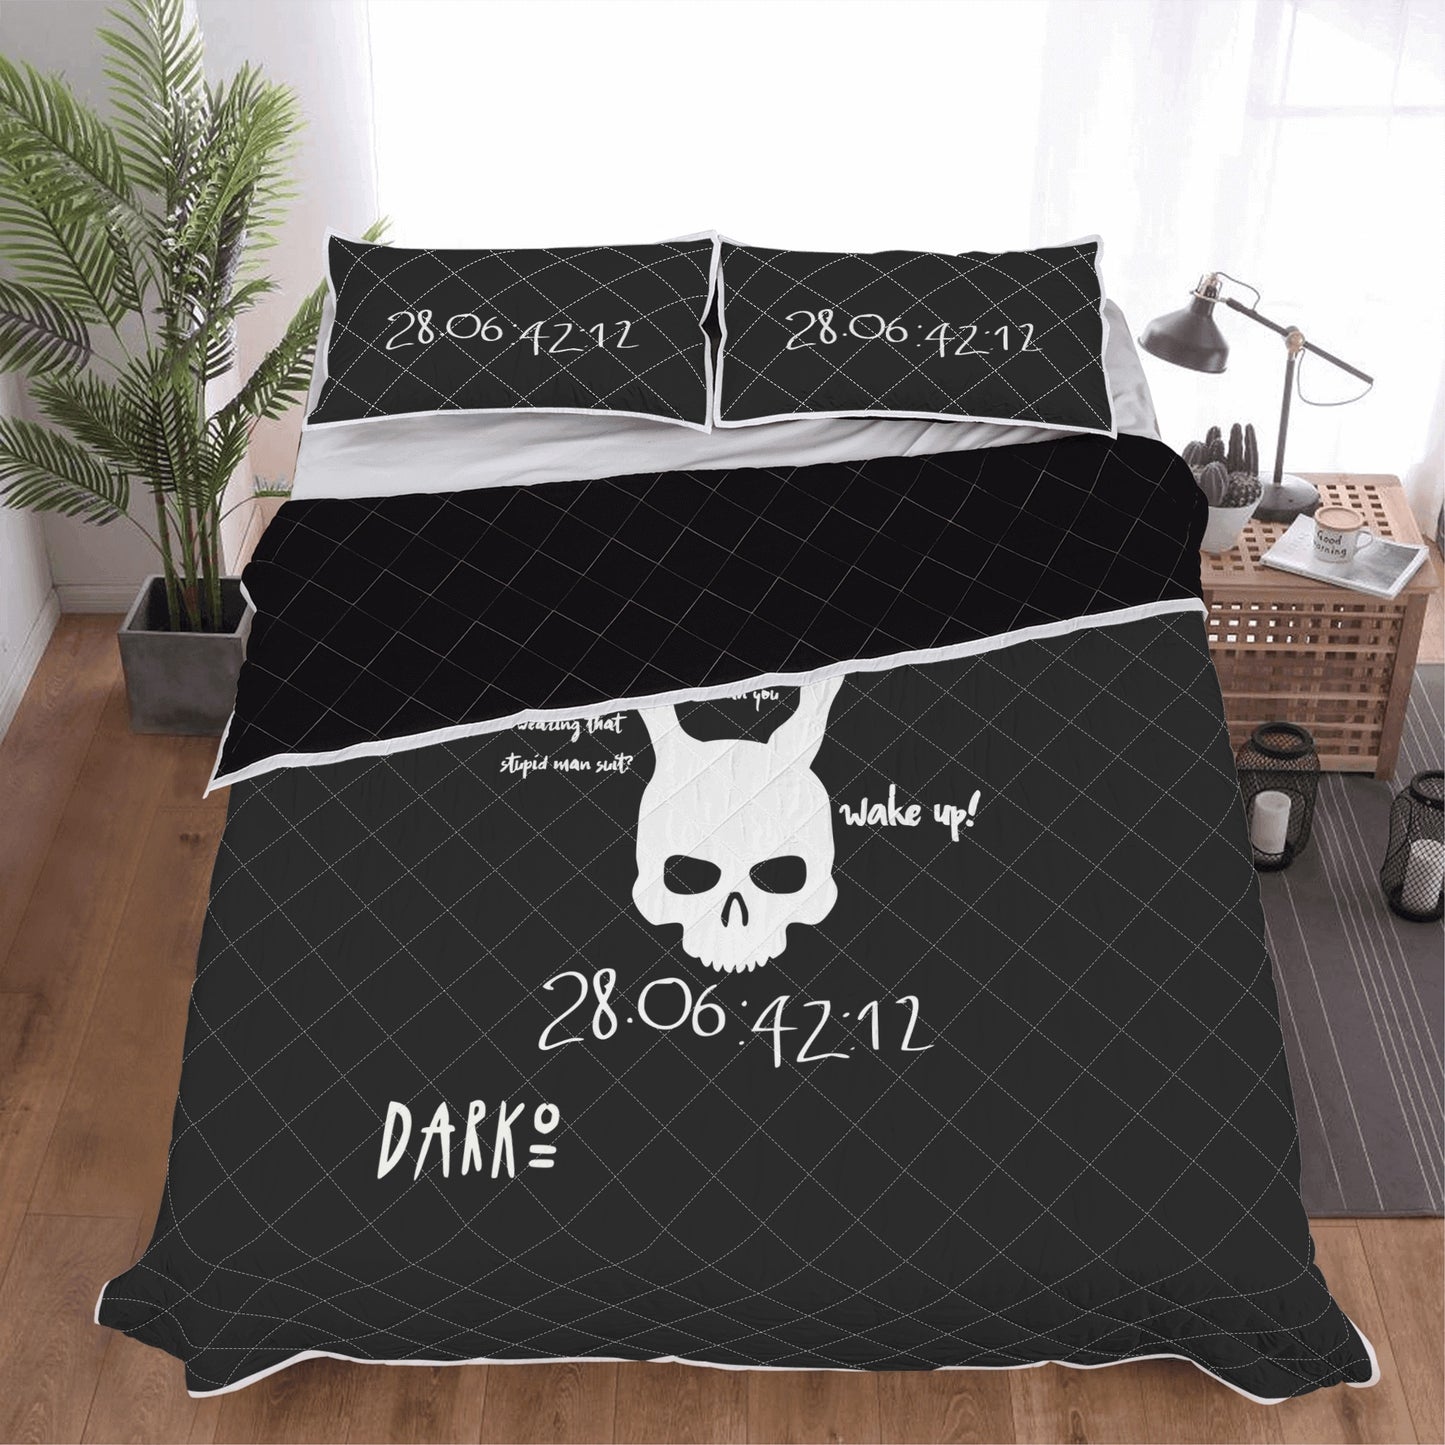 DarkO Quilt Bed Set